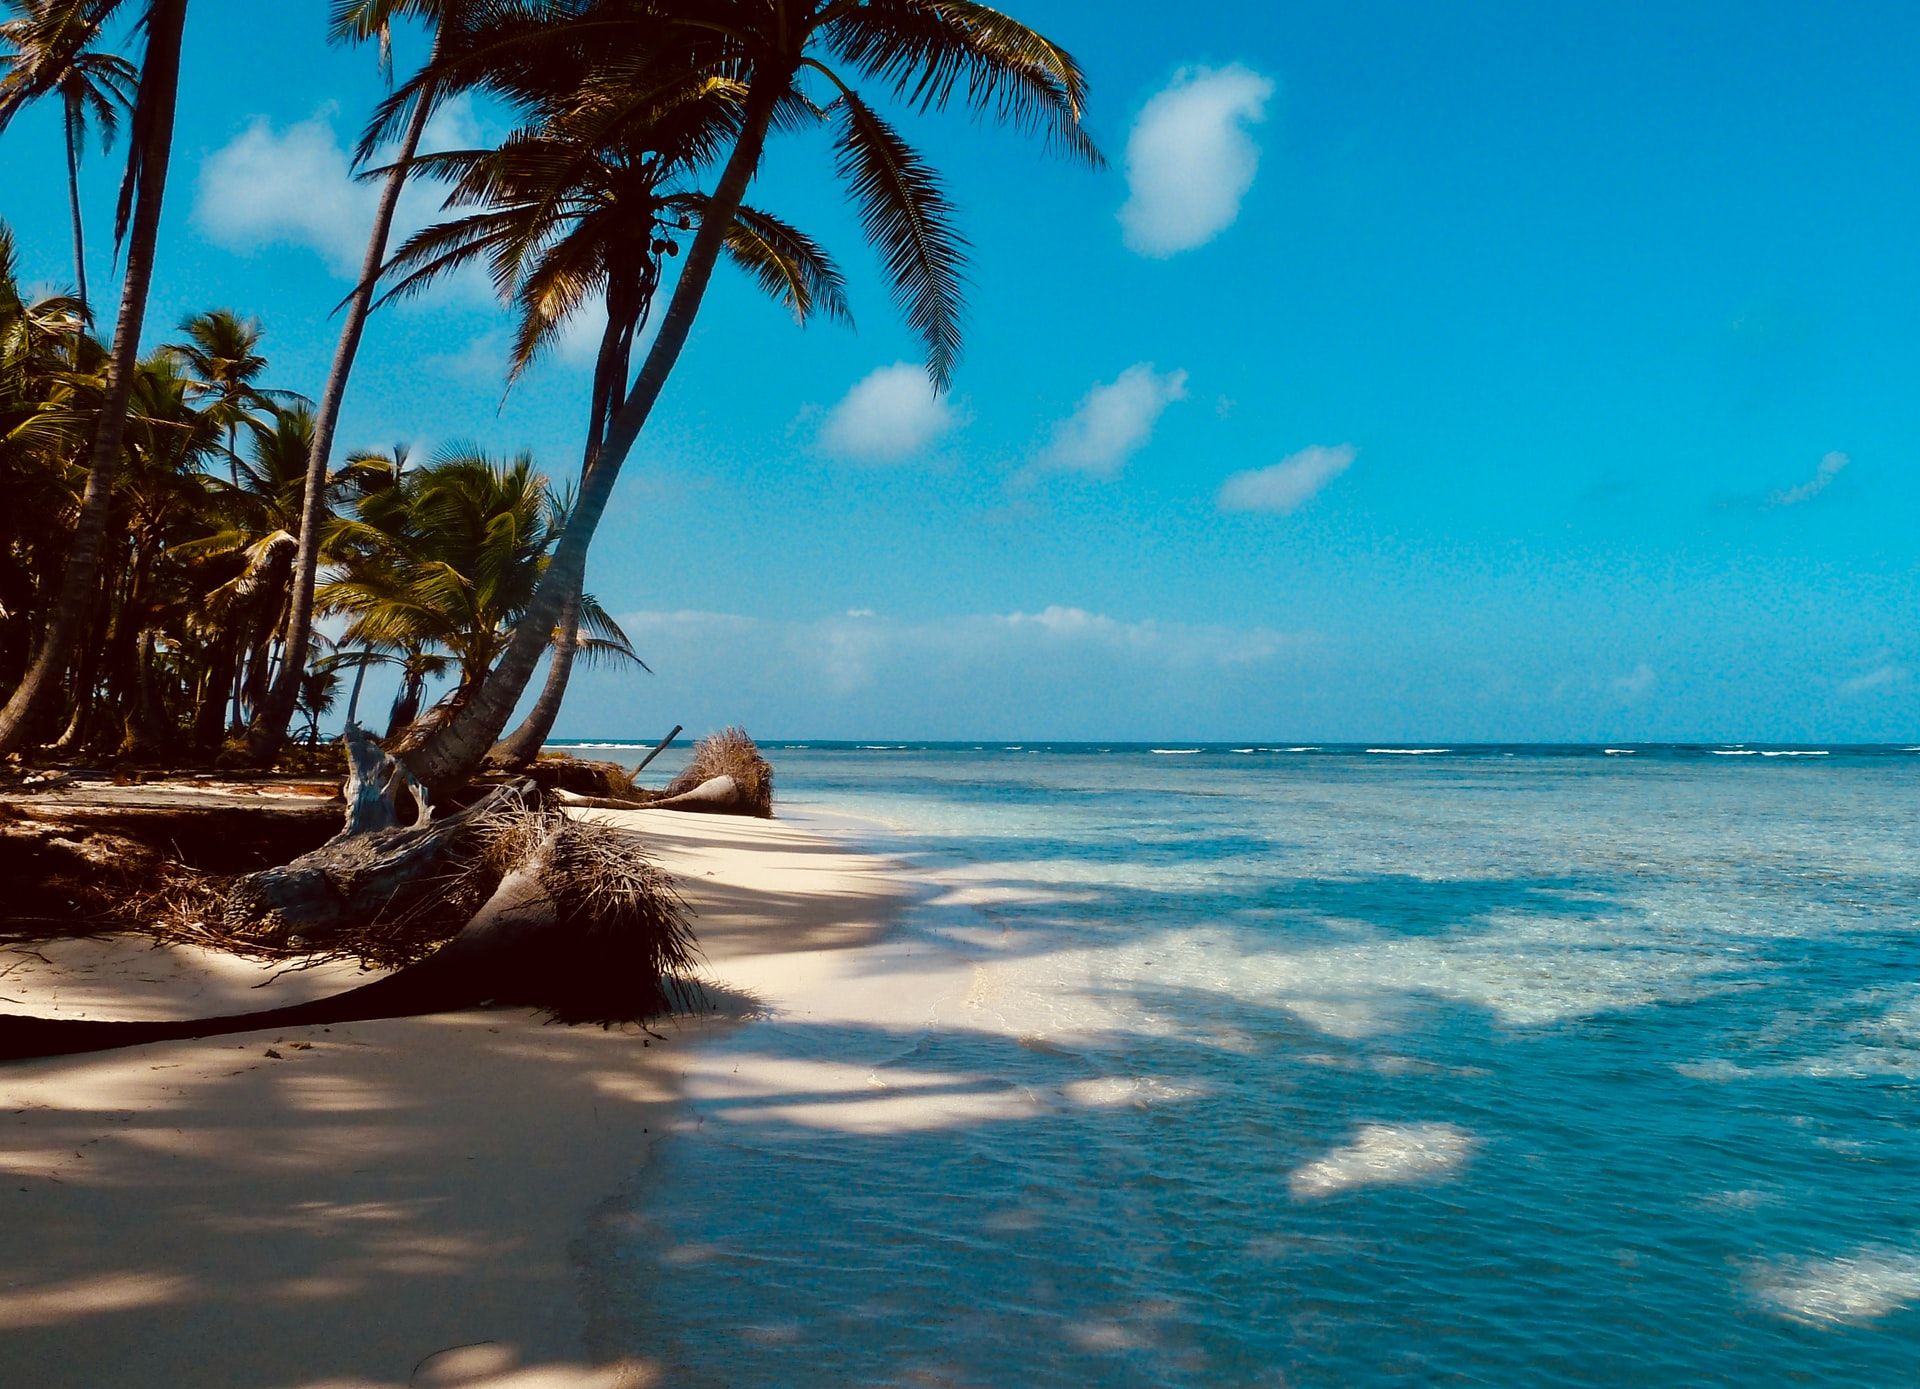 Fotografía de una playa con palmeras a la orilla del mar, cielo azulado en el horizonte.